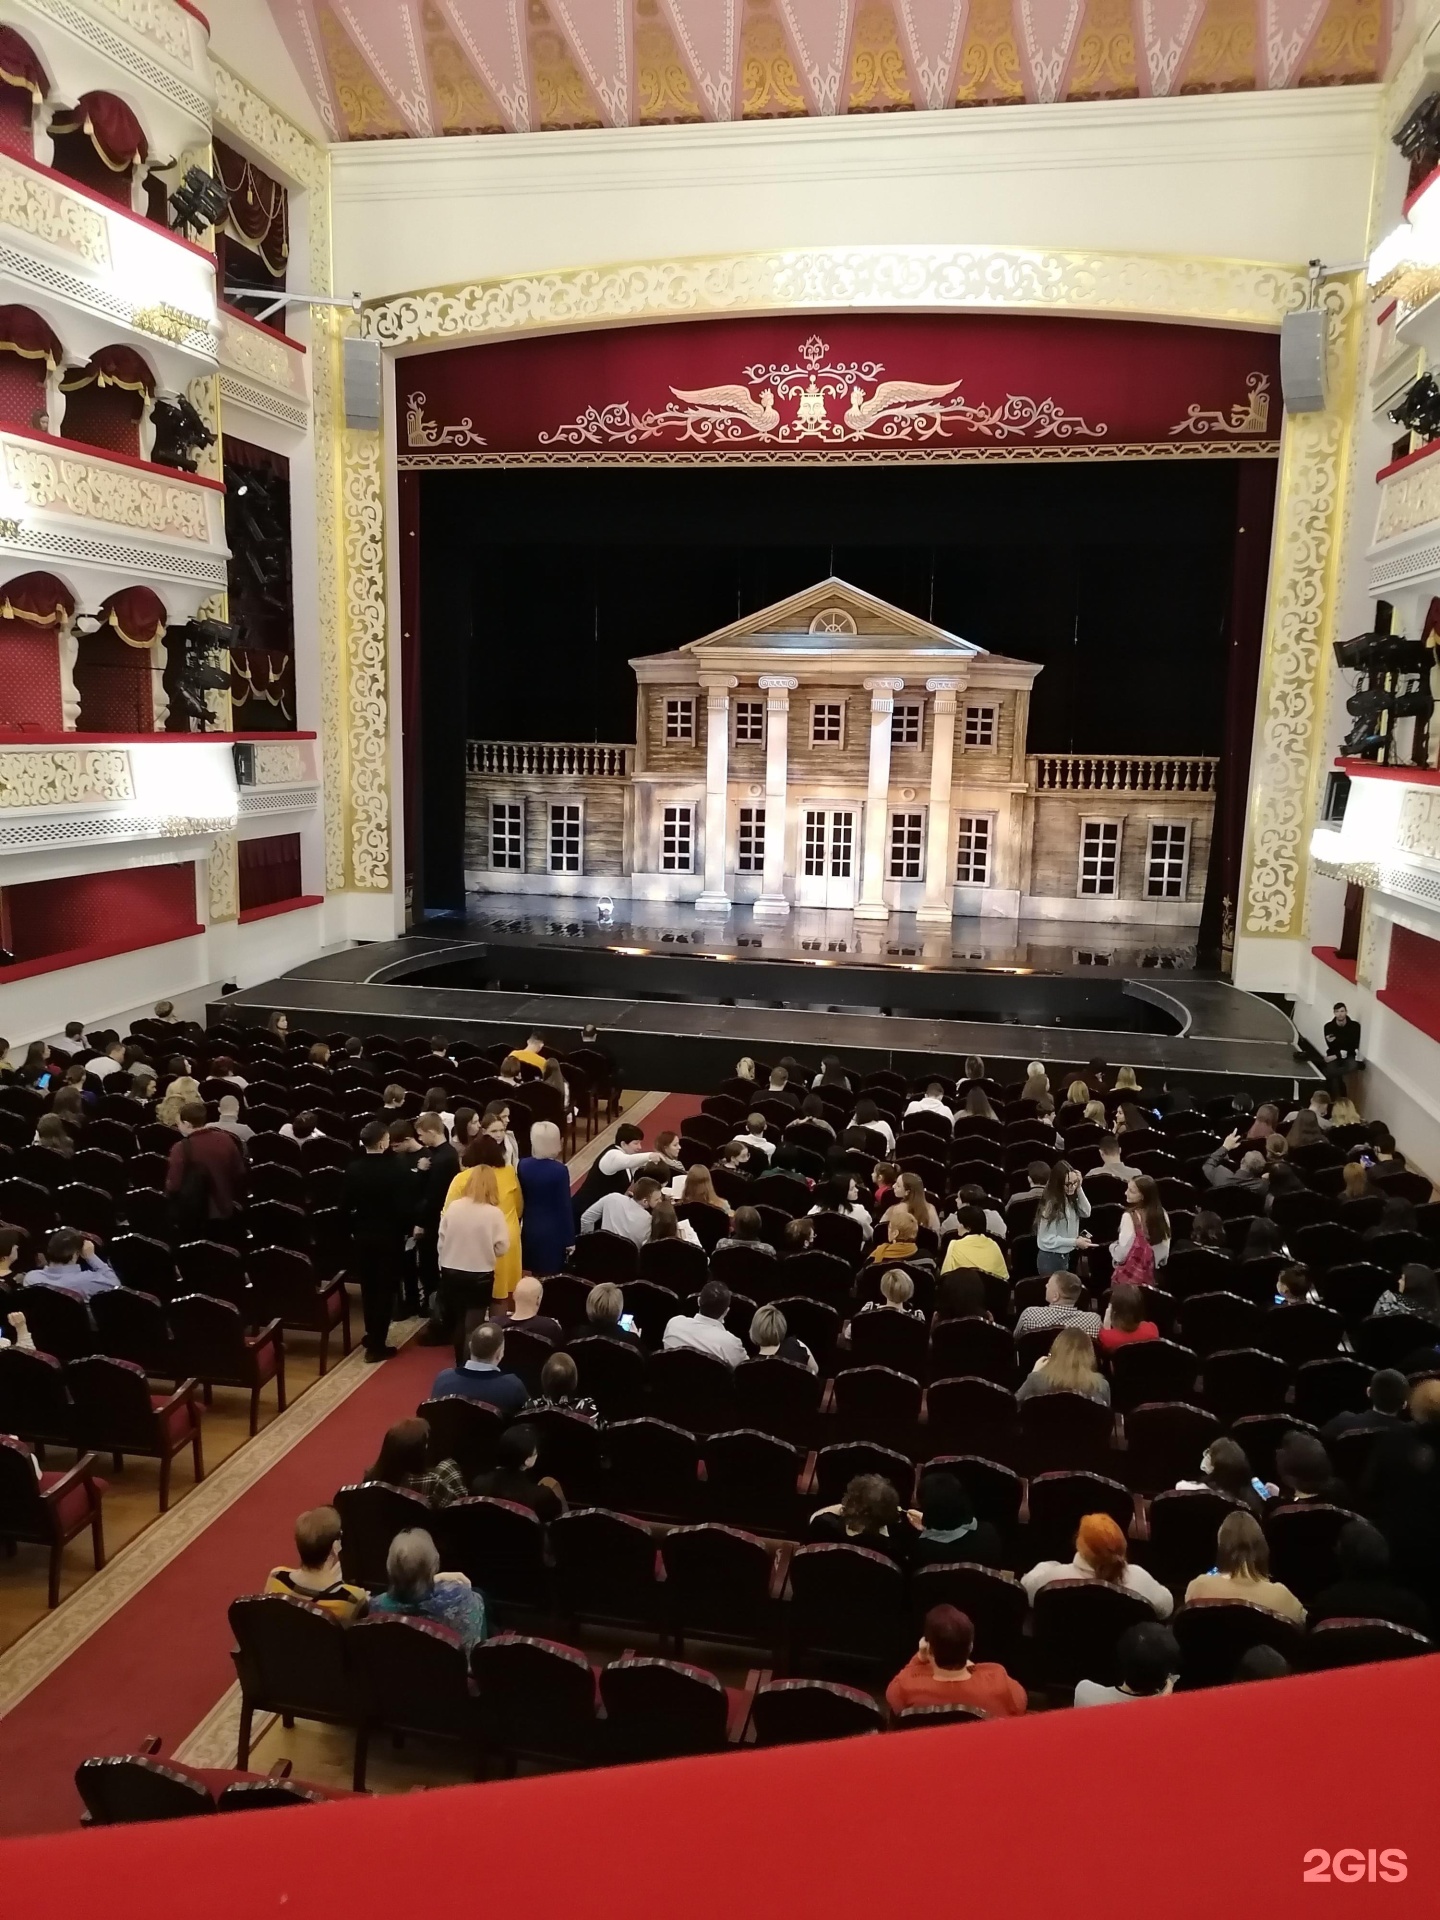 астраханский театр оперы и балета внутри